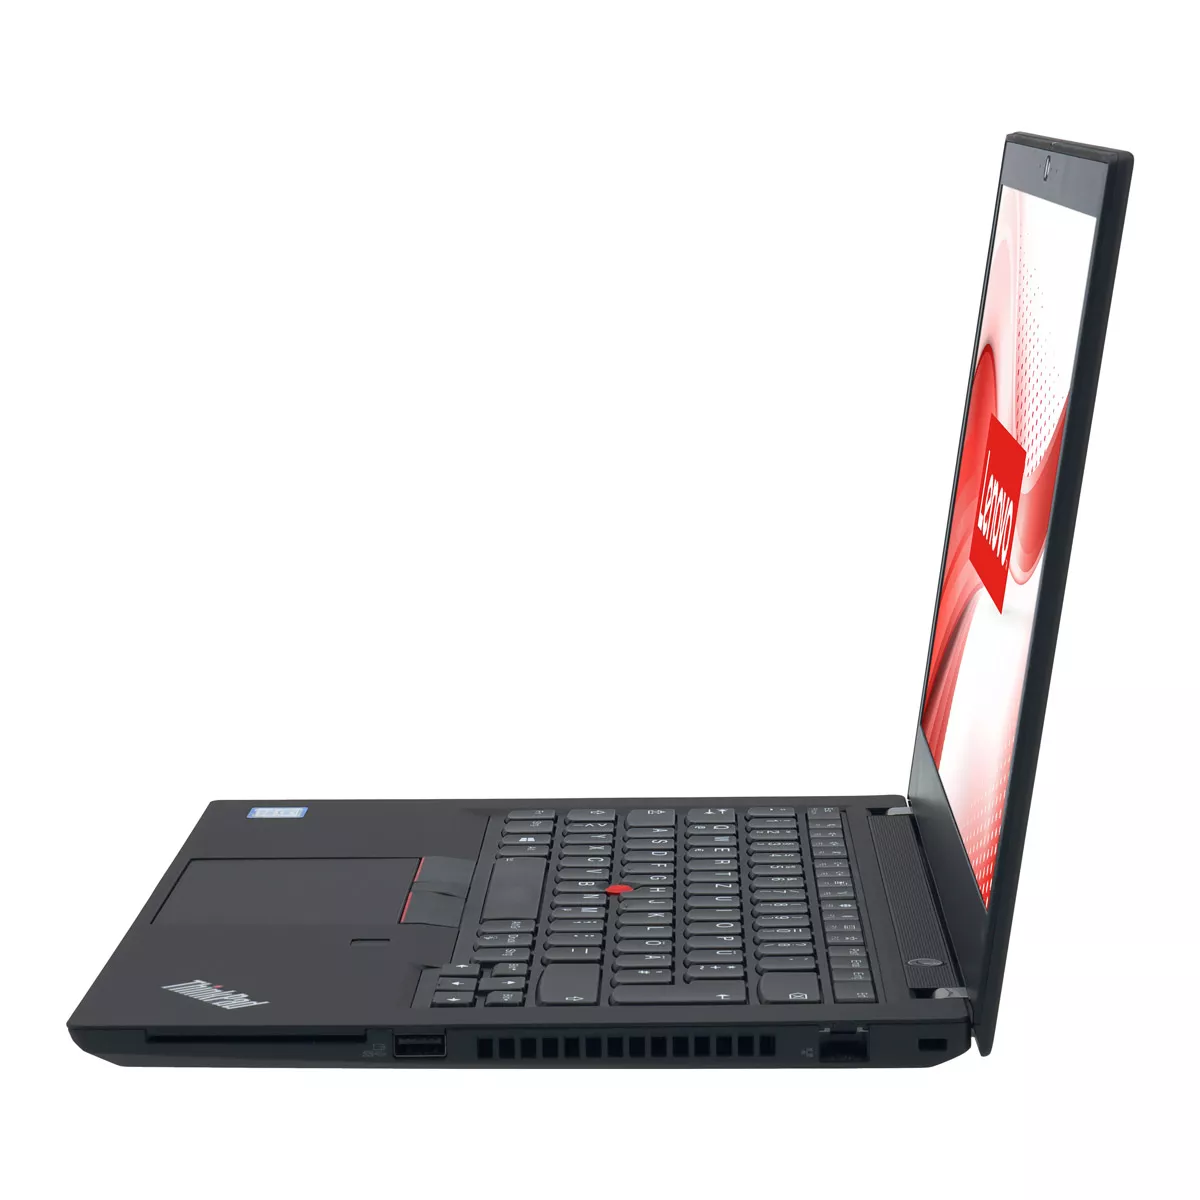 Lenovo ThinkPad T490 Core i5 8365U 8 GB 500 GB M.2 nVME SSD Webcam B